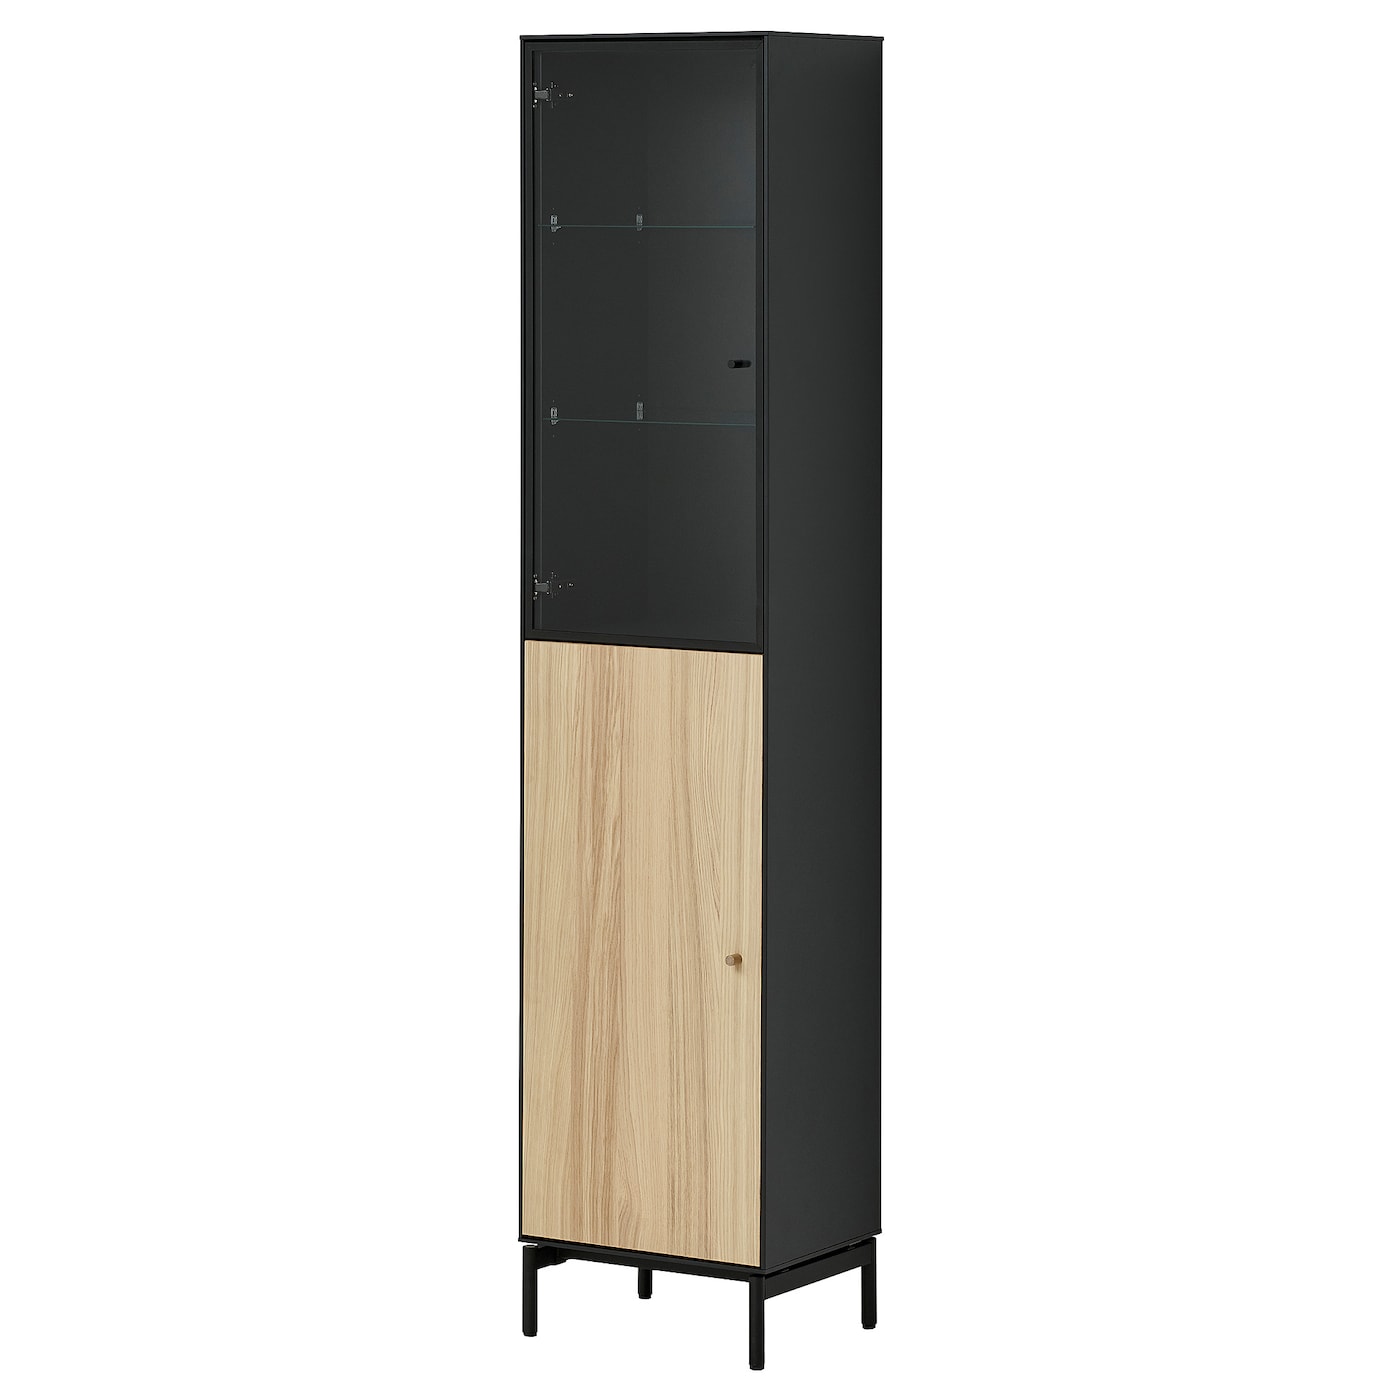 Высокий шкаф - BOASTAD IKEA/ БОАСТАД ИКЕА, 41х32х185 см,  черный/ под беленый дуб